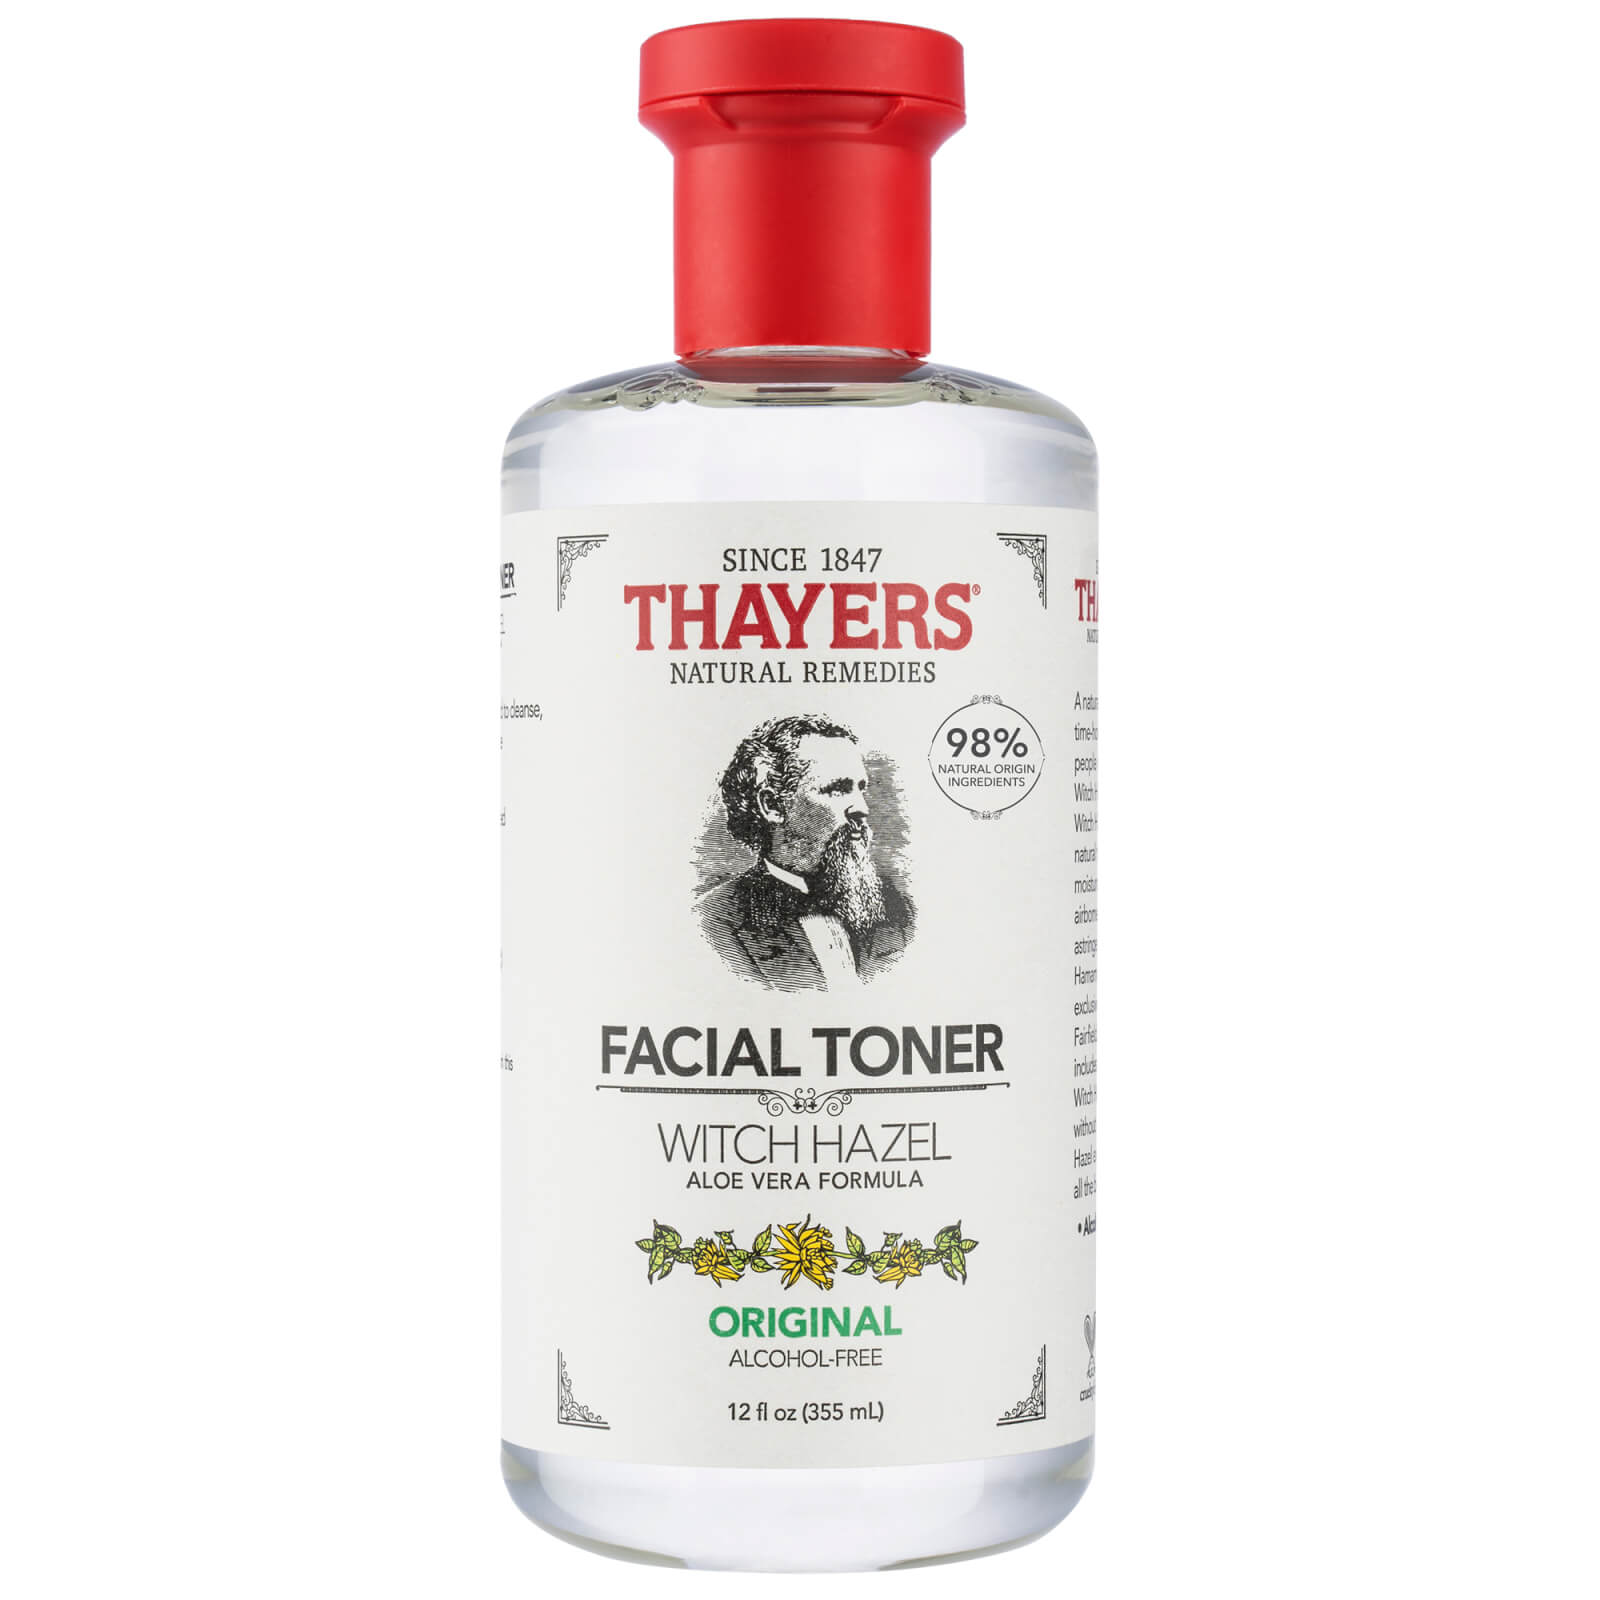 Thayers Natural Remedies Thayers Original Facial Toner 335ml